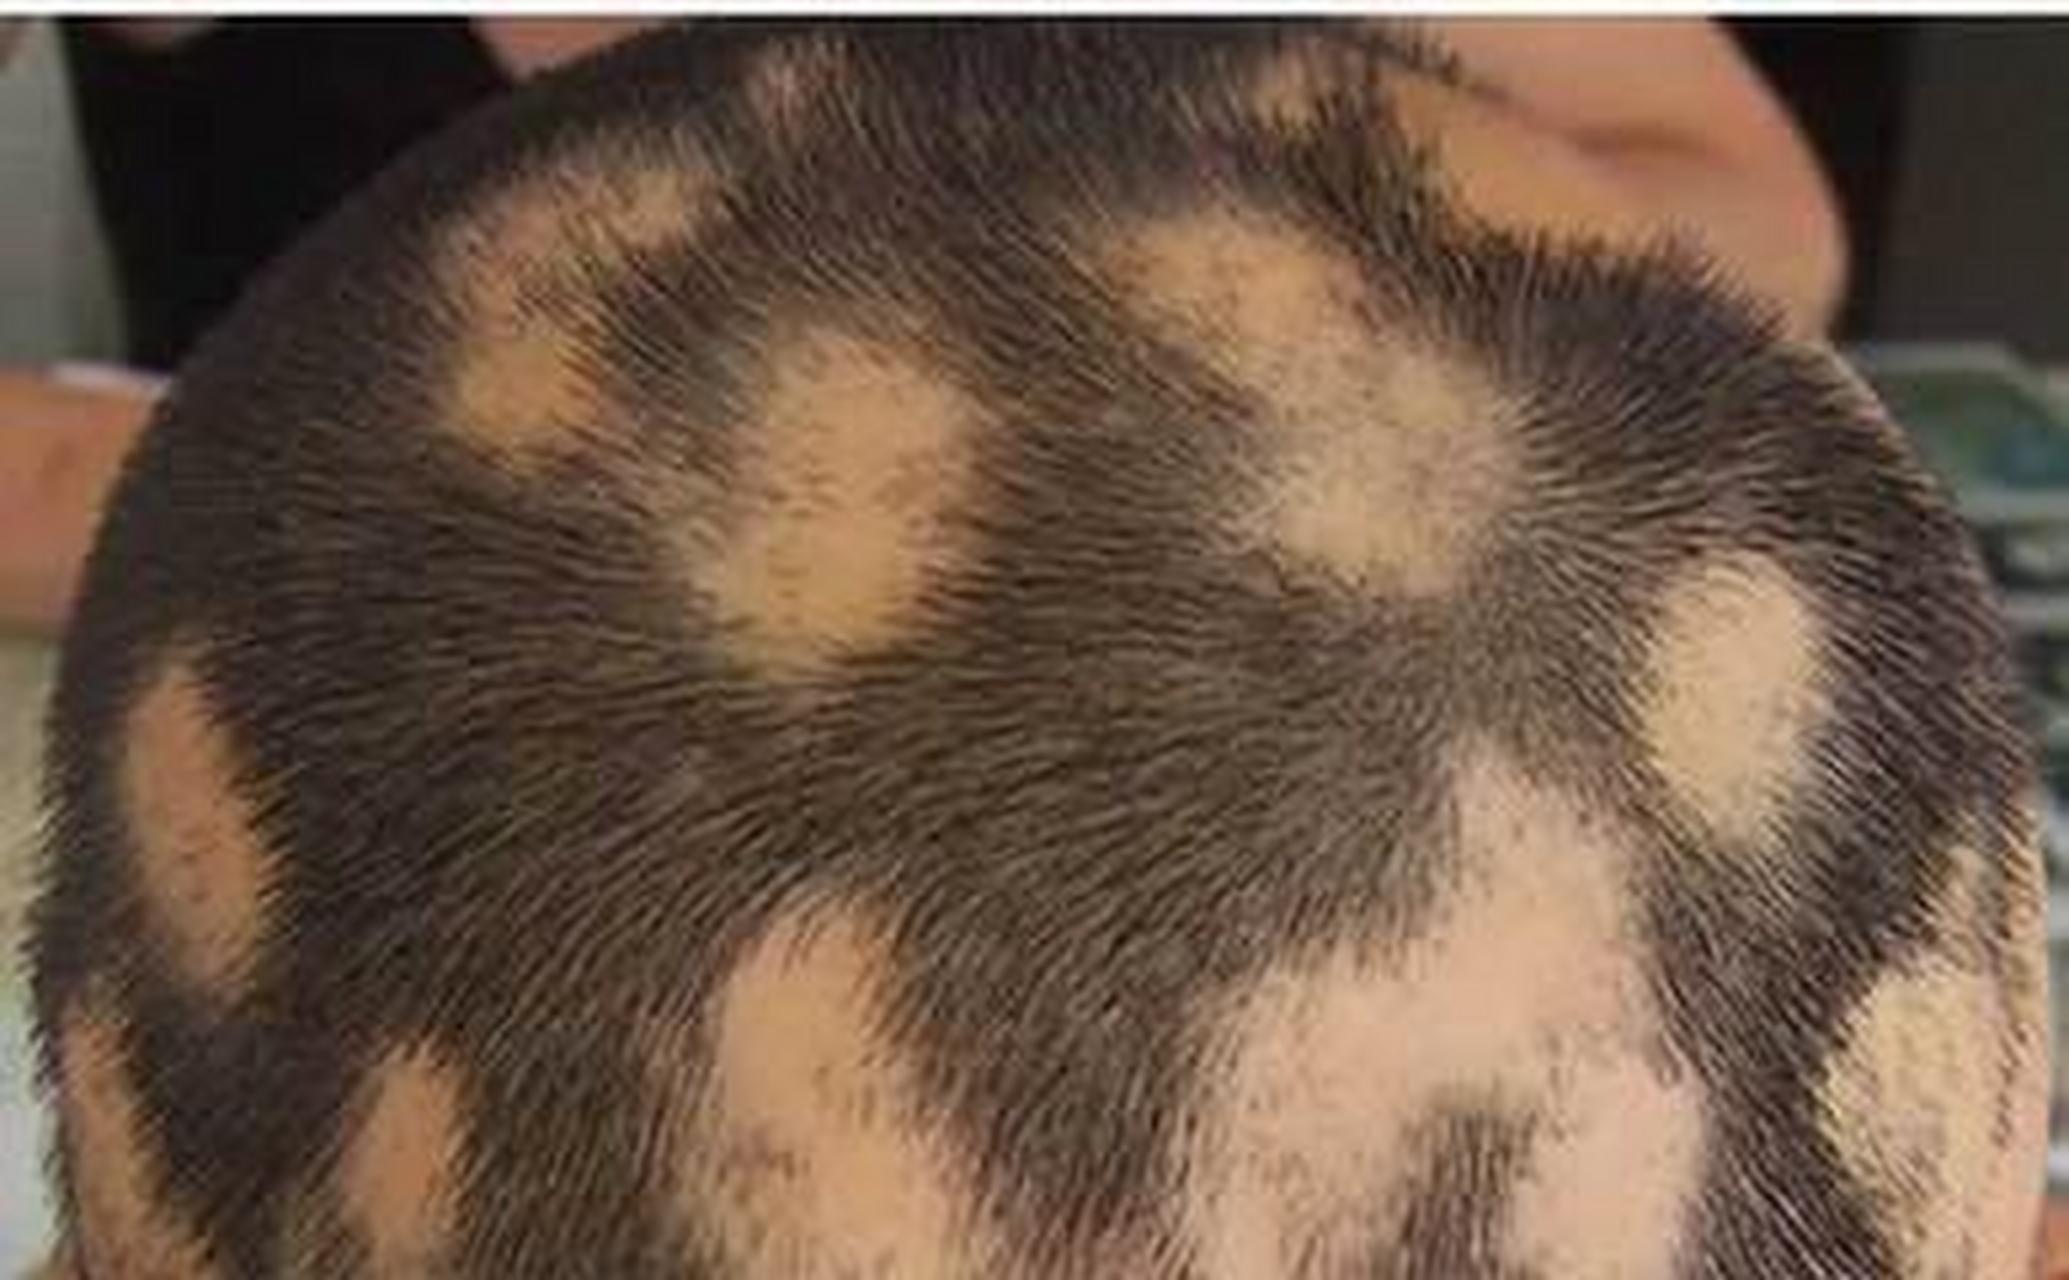 斑秃 斑秃,俗称"鬼剃头"是一种常见的非瘢痕性脱发,一般是一片一片地